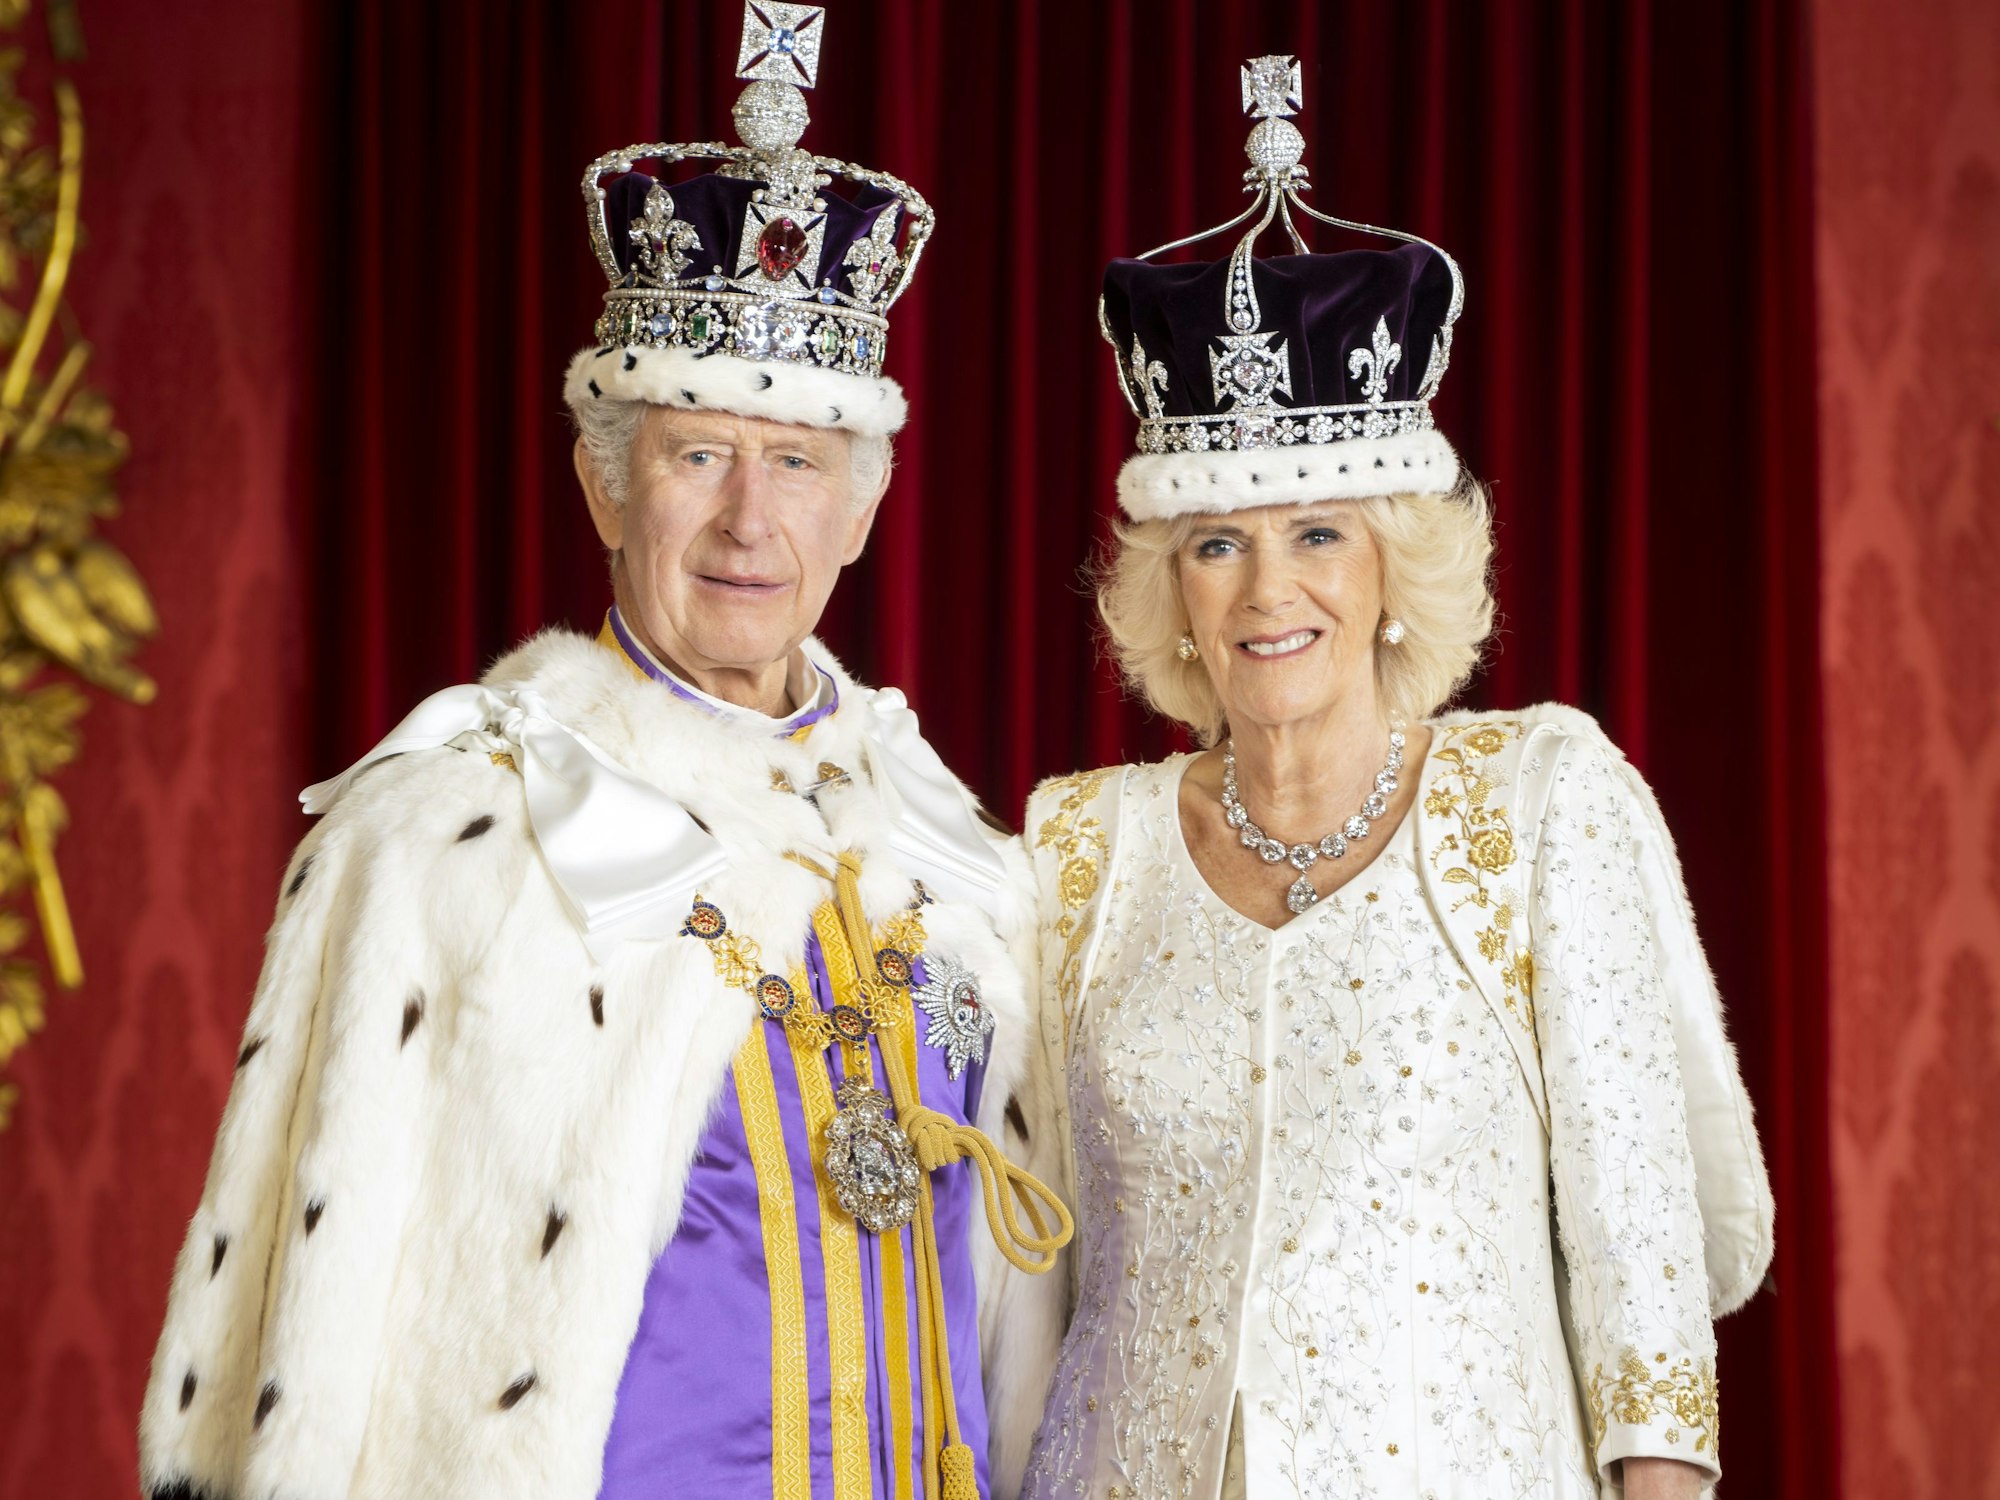 Das am 08.05.2023 vom Royal Household 2023 herausgegebene Handout zeigt König Charles III. und Königin Camilla im Thronsaal des Buckingham Palace, beide tragen ihre Kronen.